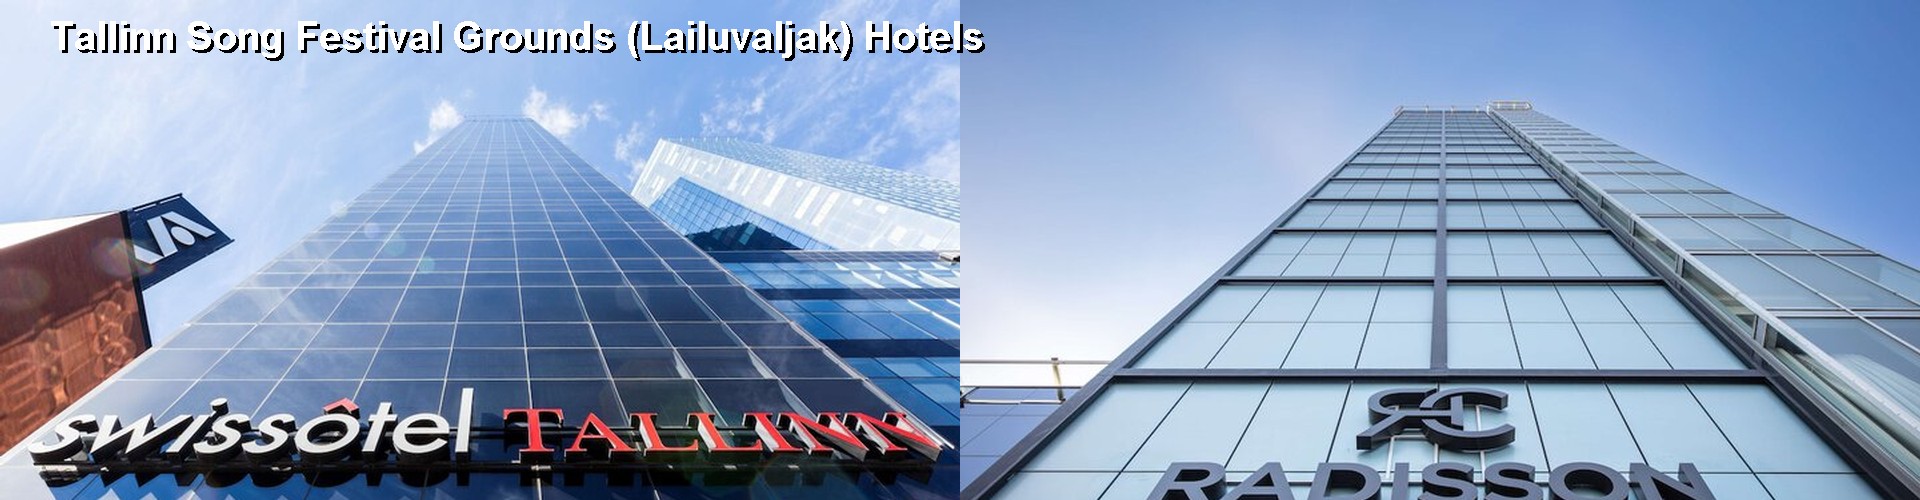 5 Best Hotels near Tallinn Song Festival Grounds (Lailuvaljak)